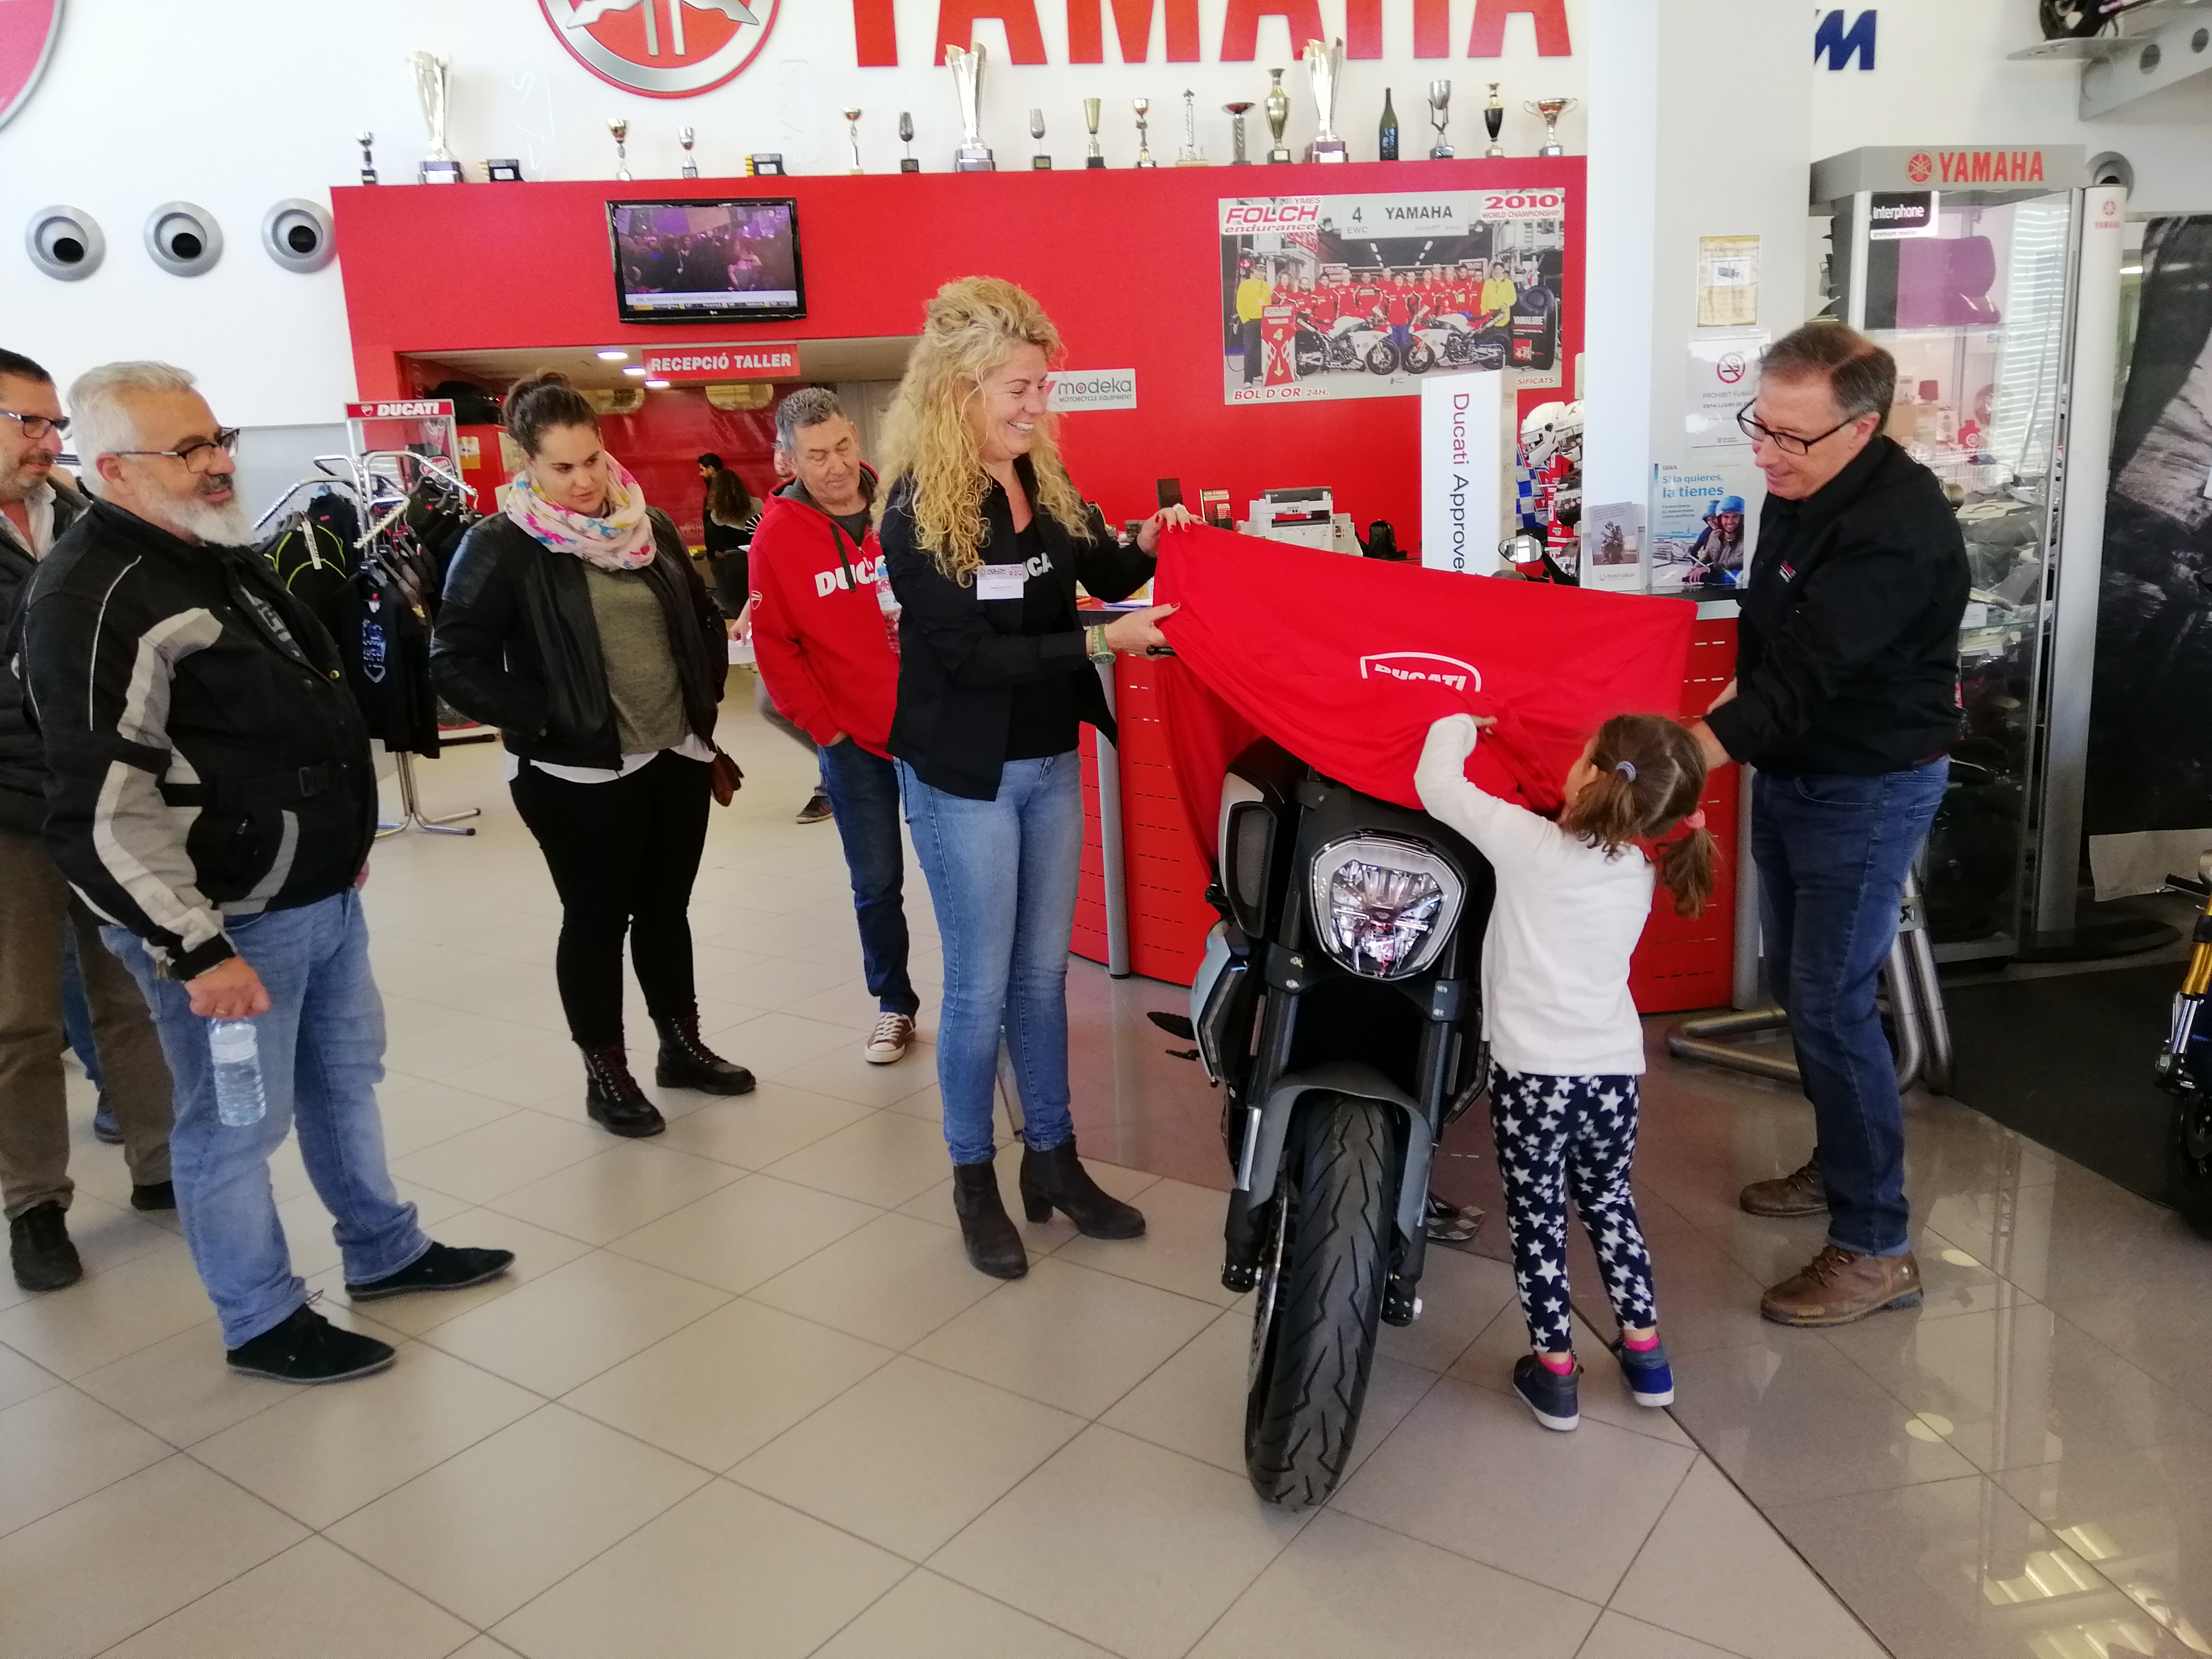 Season Opening 2019 - Ducati